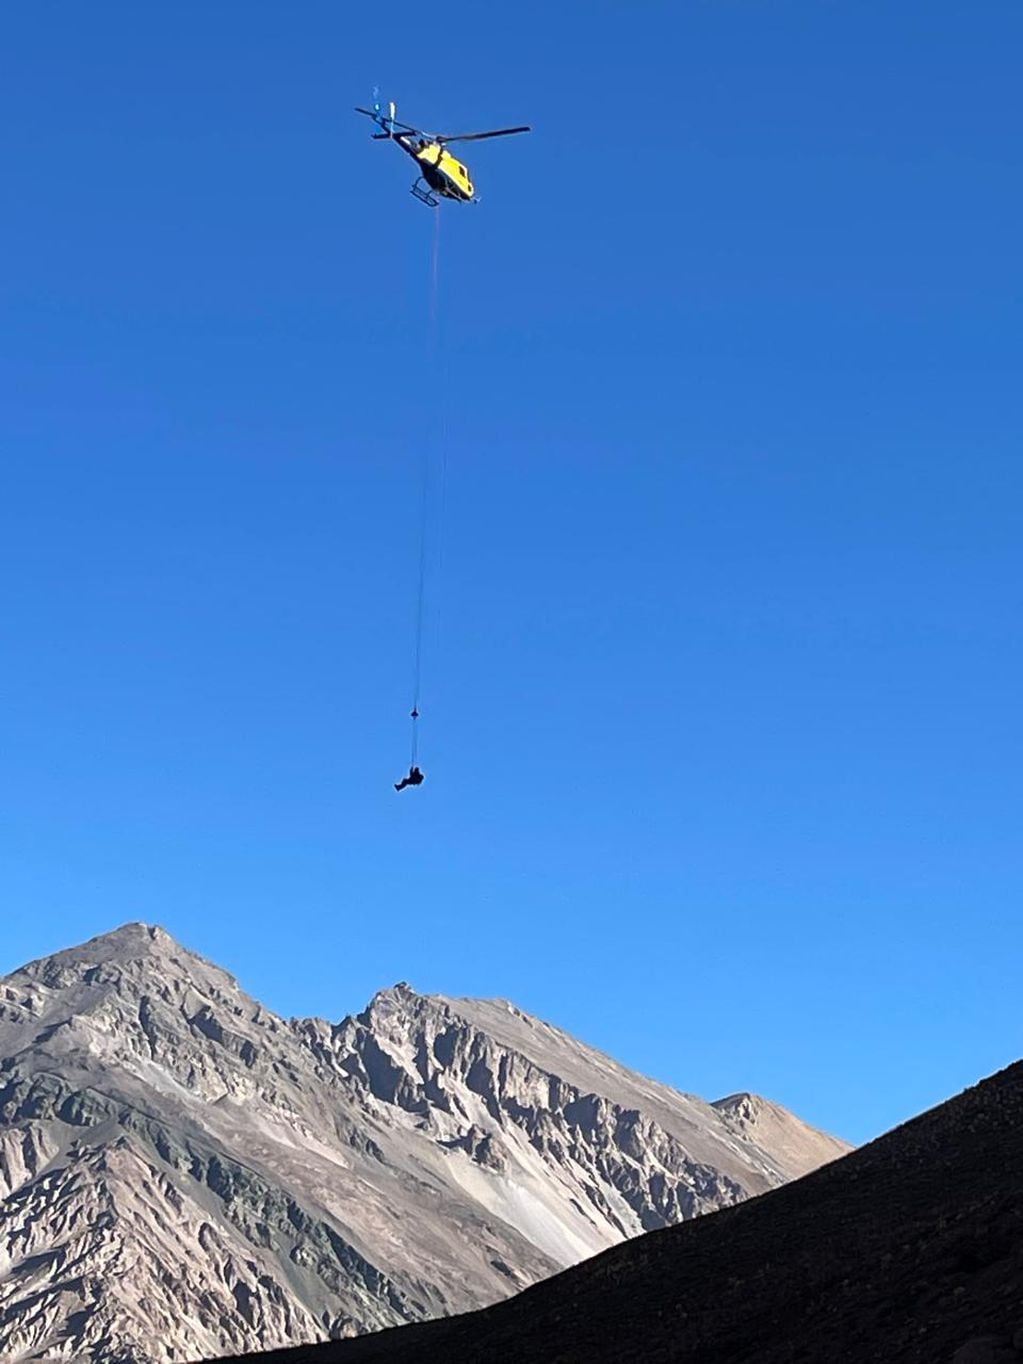 Dos mellizos querían “la foto perfecta” en el Aconcagua, uno de ellos cayó y los rescataron en helicoptero. Foto: Prensa Ministerio de Seguridad Mendoza